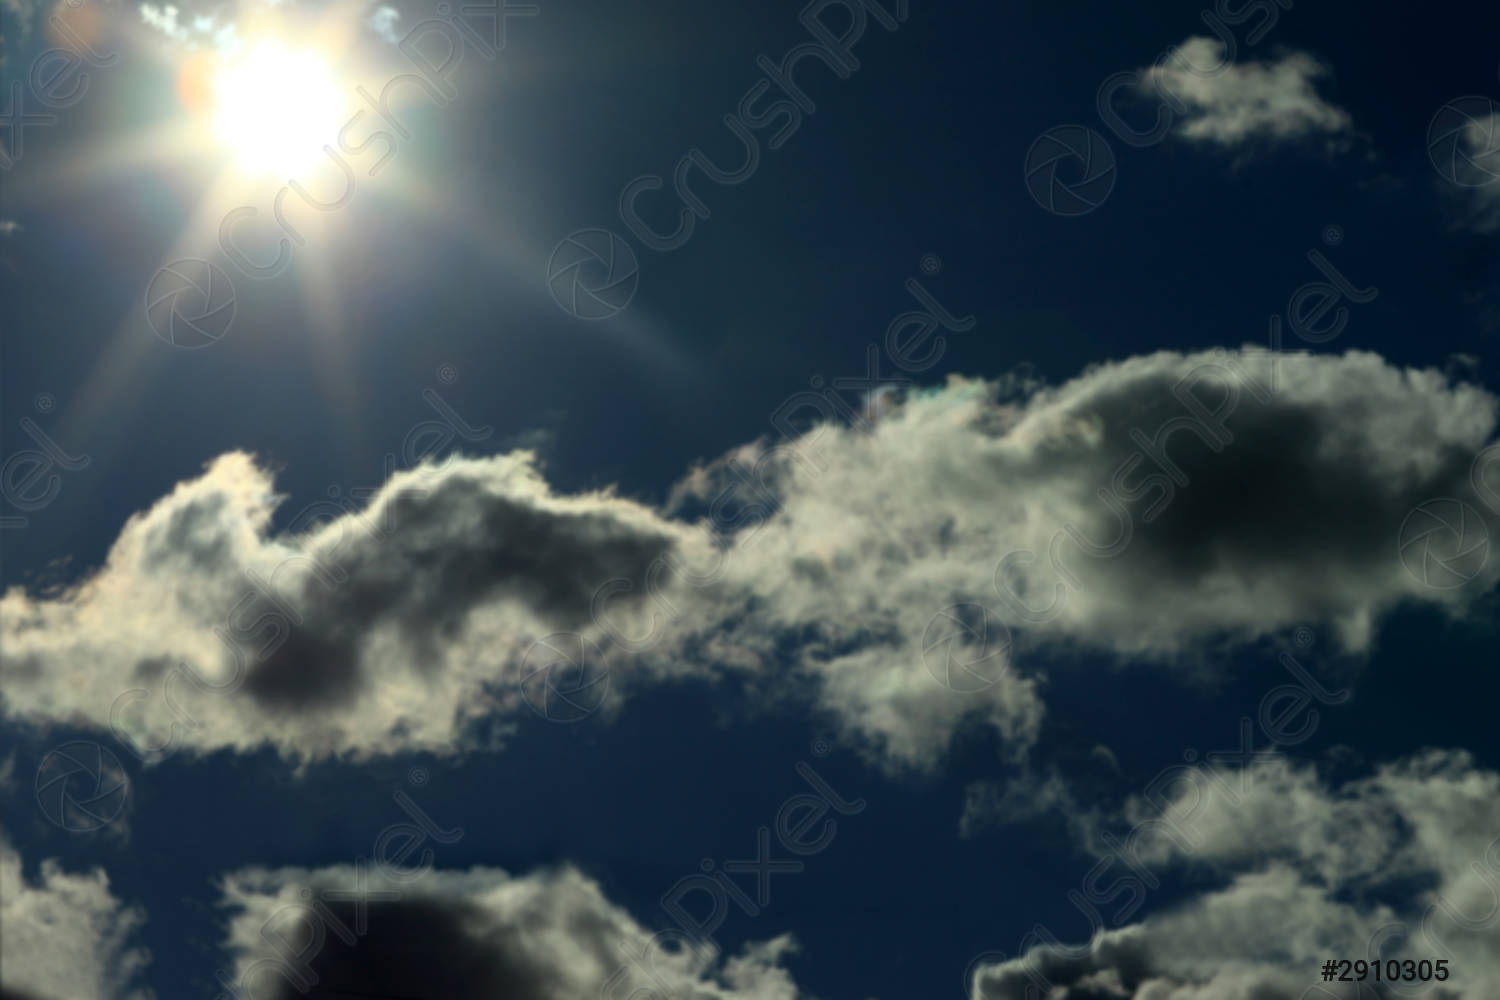 सूरज छिपा बादल में's image